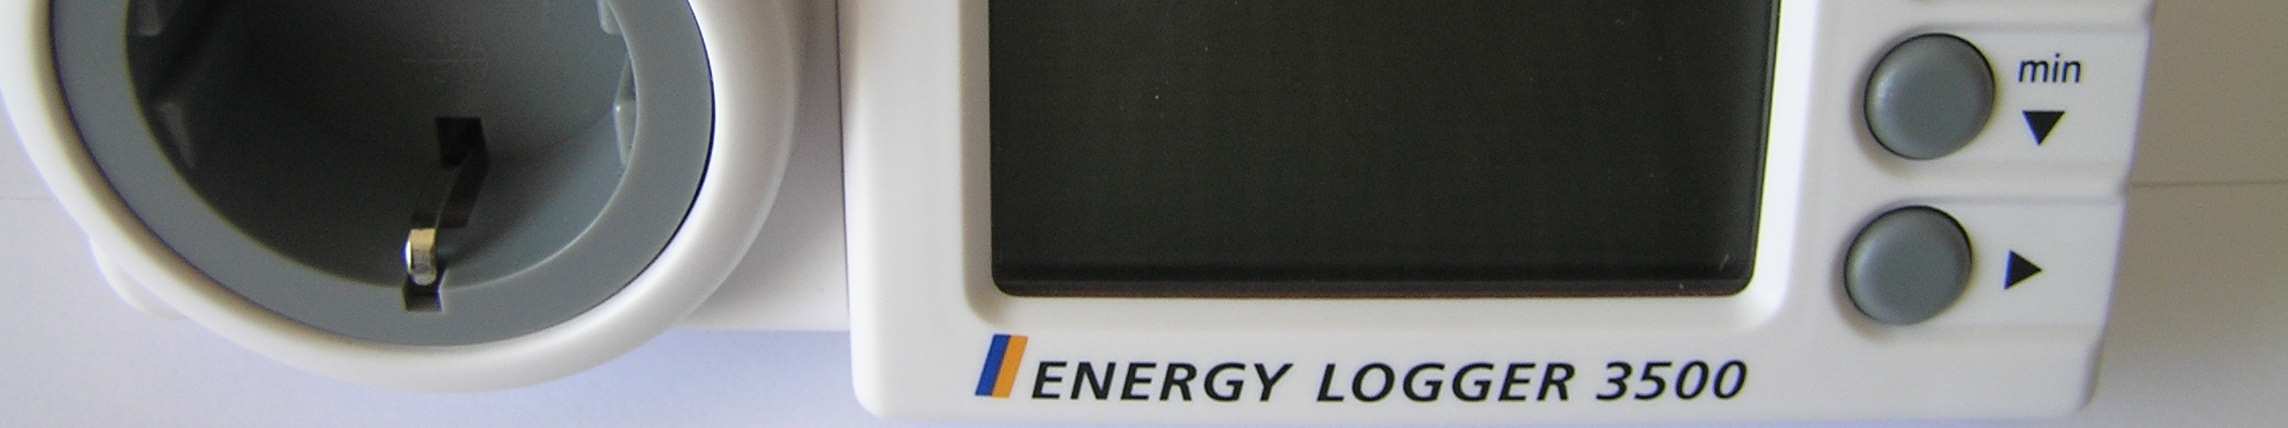 Experimenty s meračom spotreby energie Merací prístroj Energy Logger 3500 (EL 3500) zobrazuje na prehľadnom displeji všetky dostupné údaje pre daný spotrebič: napätie (V), prúd (A), frekvenciu siete